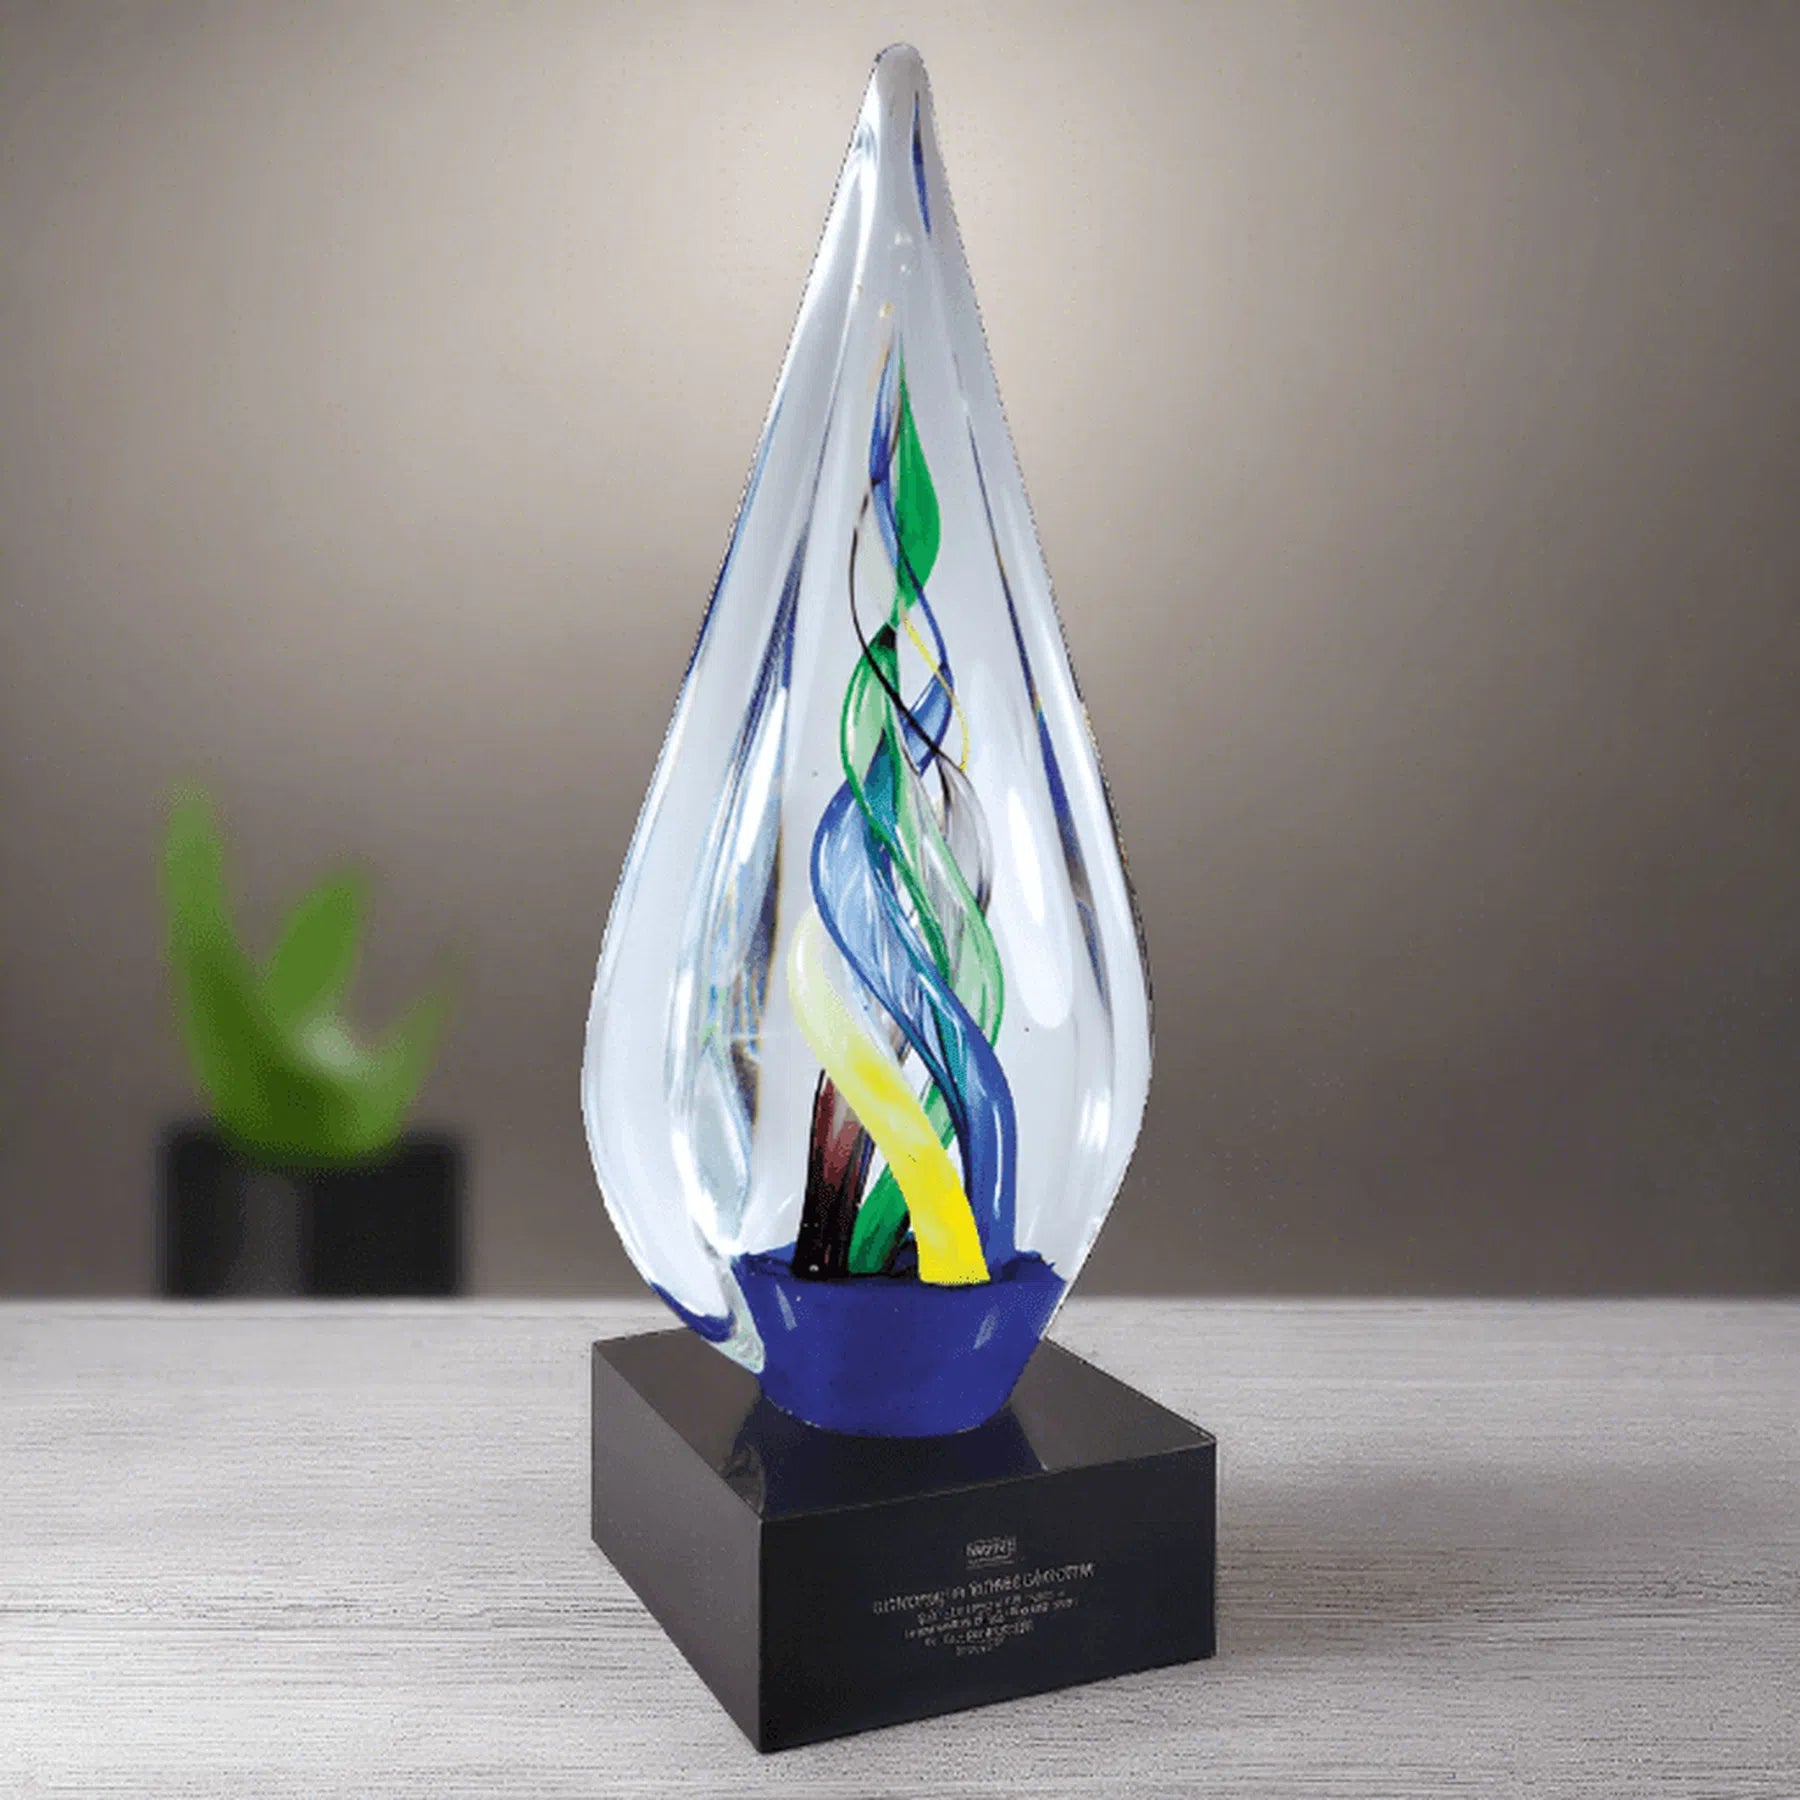 10 3/4" Infinity Twist Art Glass Award Sculpture